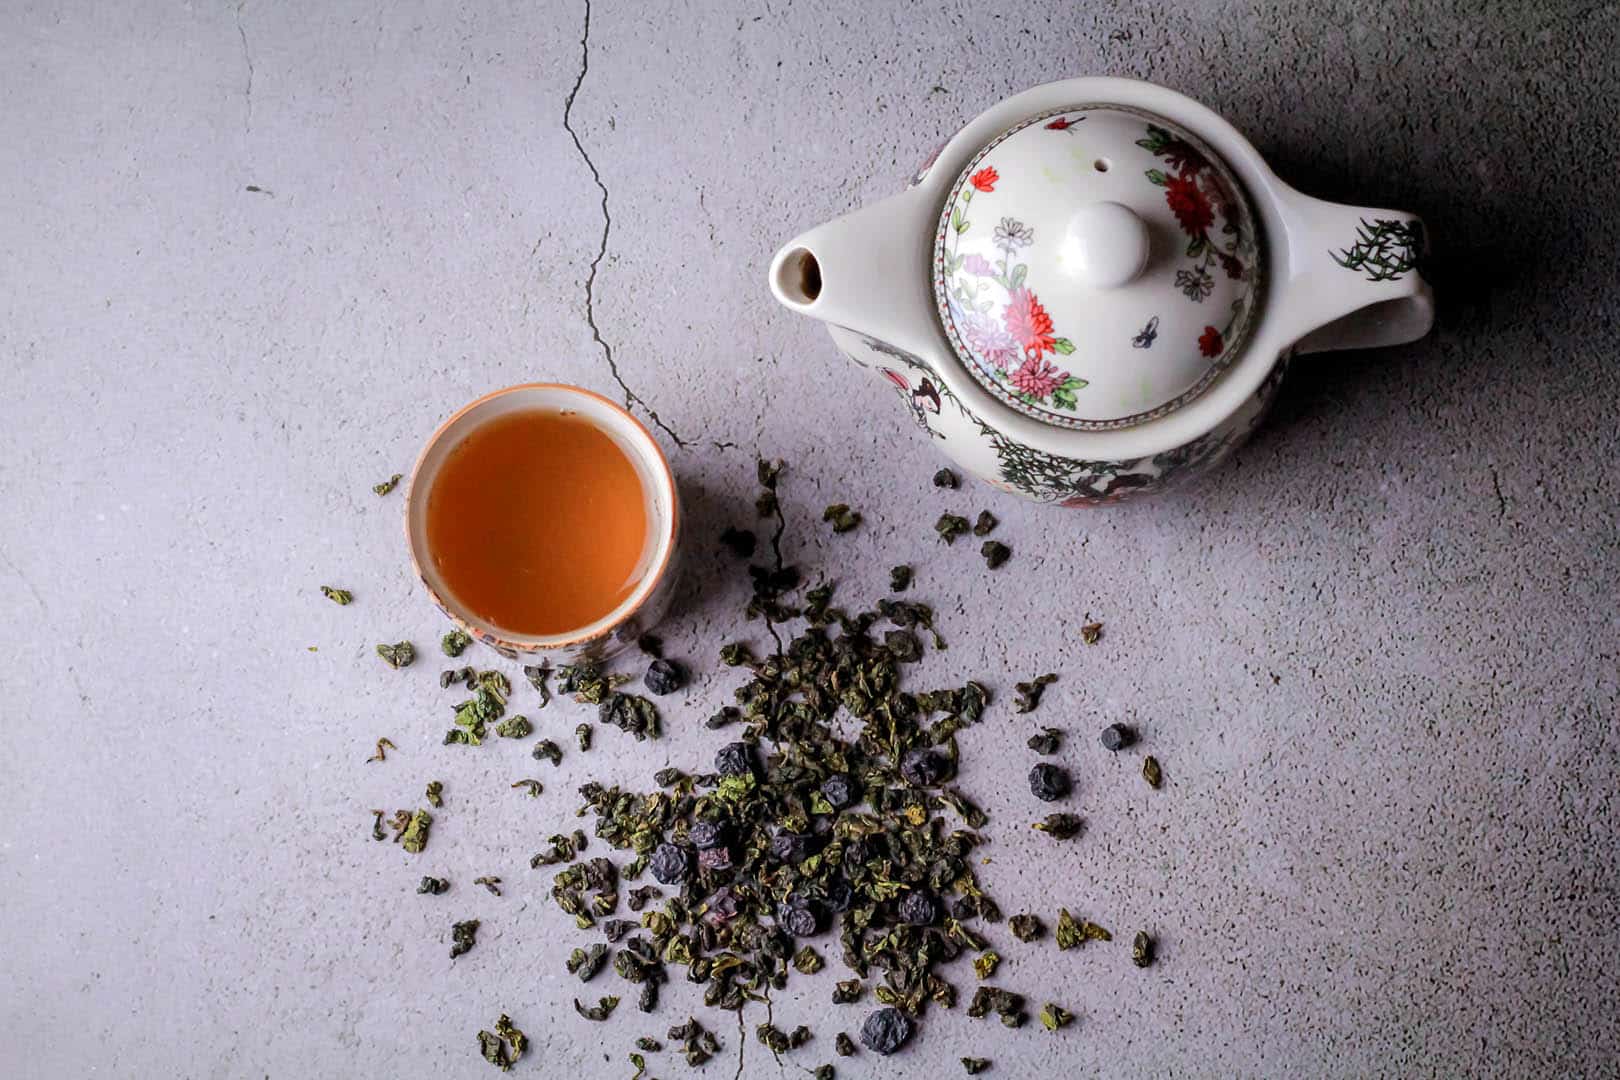 health benefits of tea